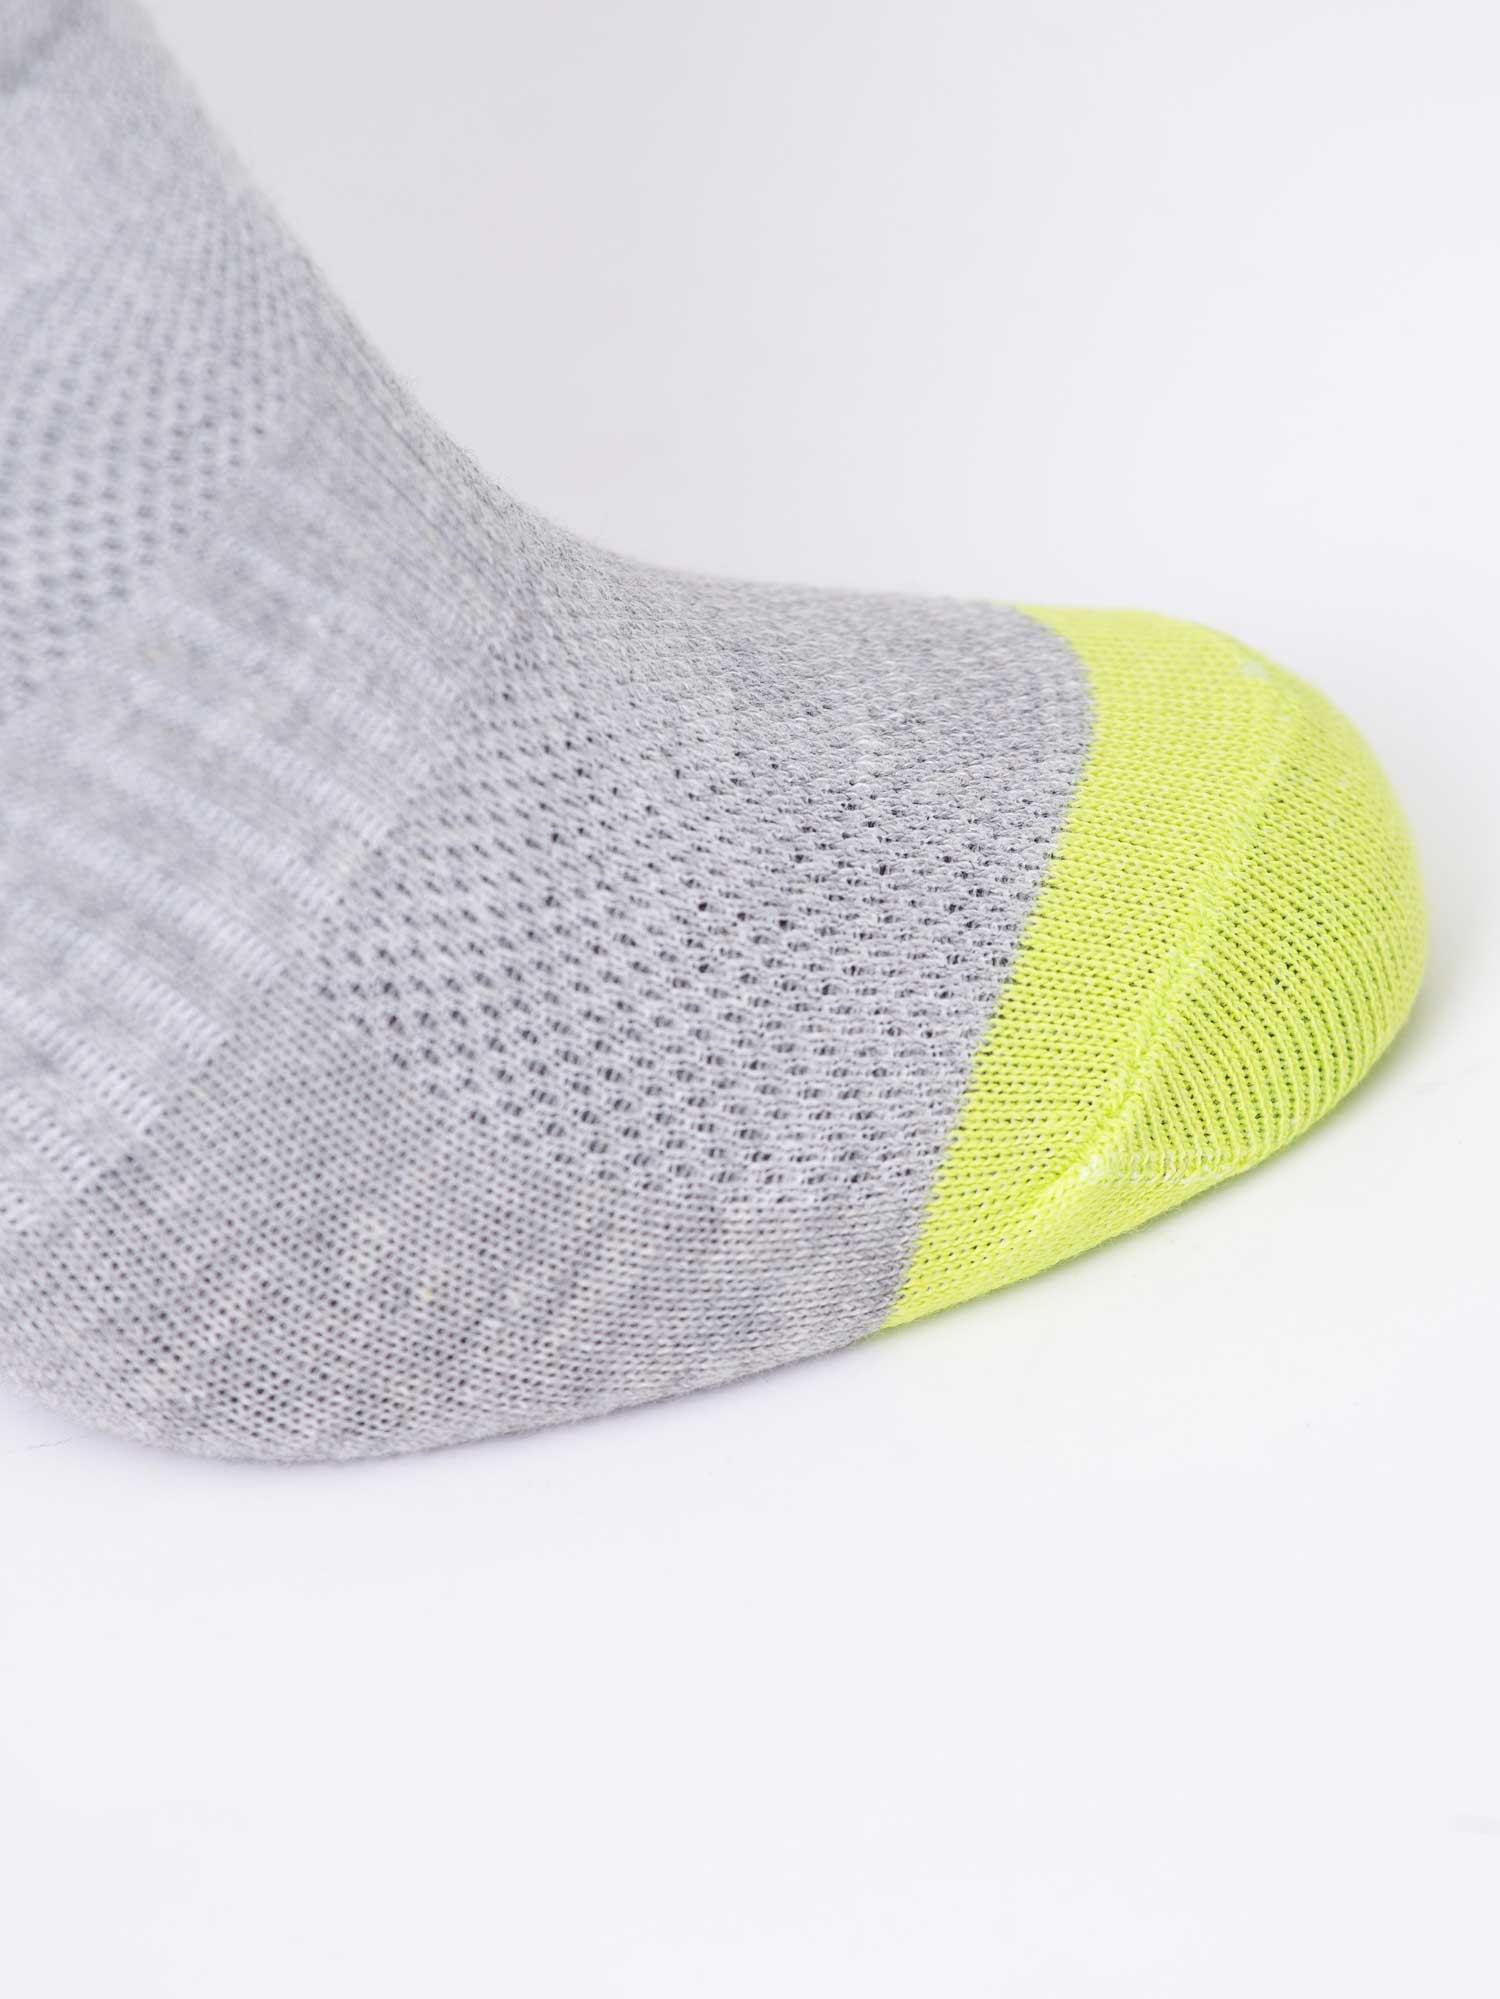 Selected image for BRILLE Muške čarape Summer set x3 Socks šarene